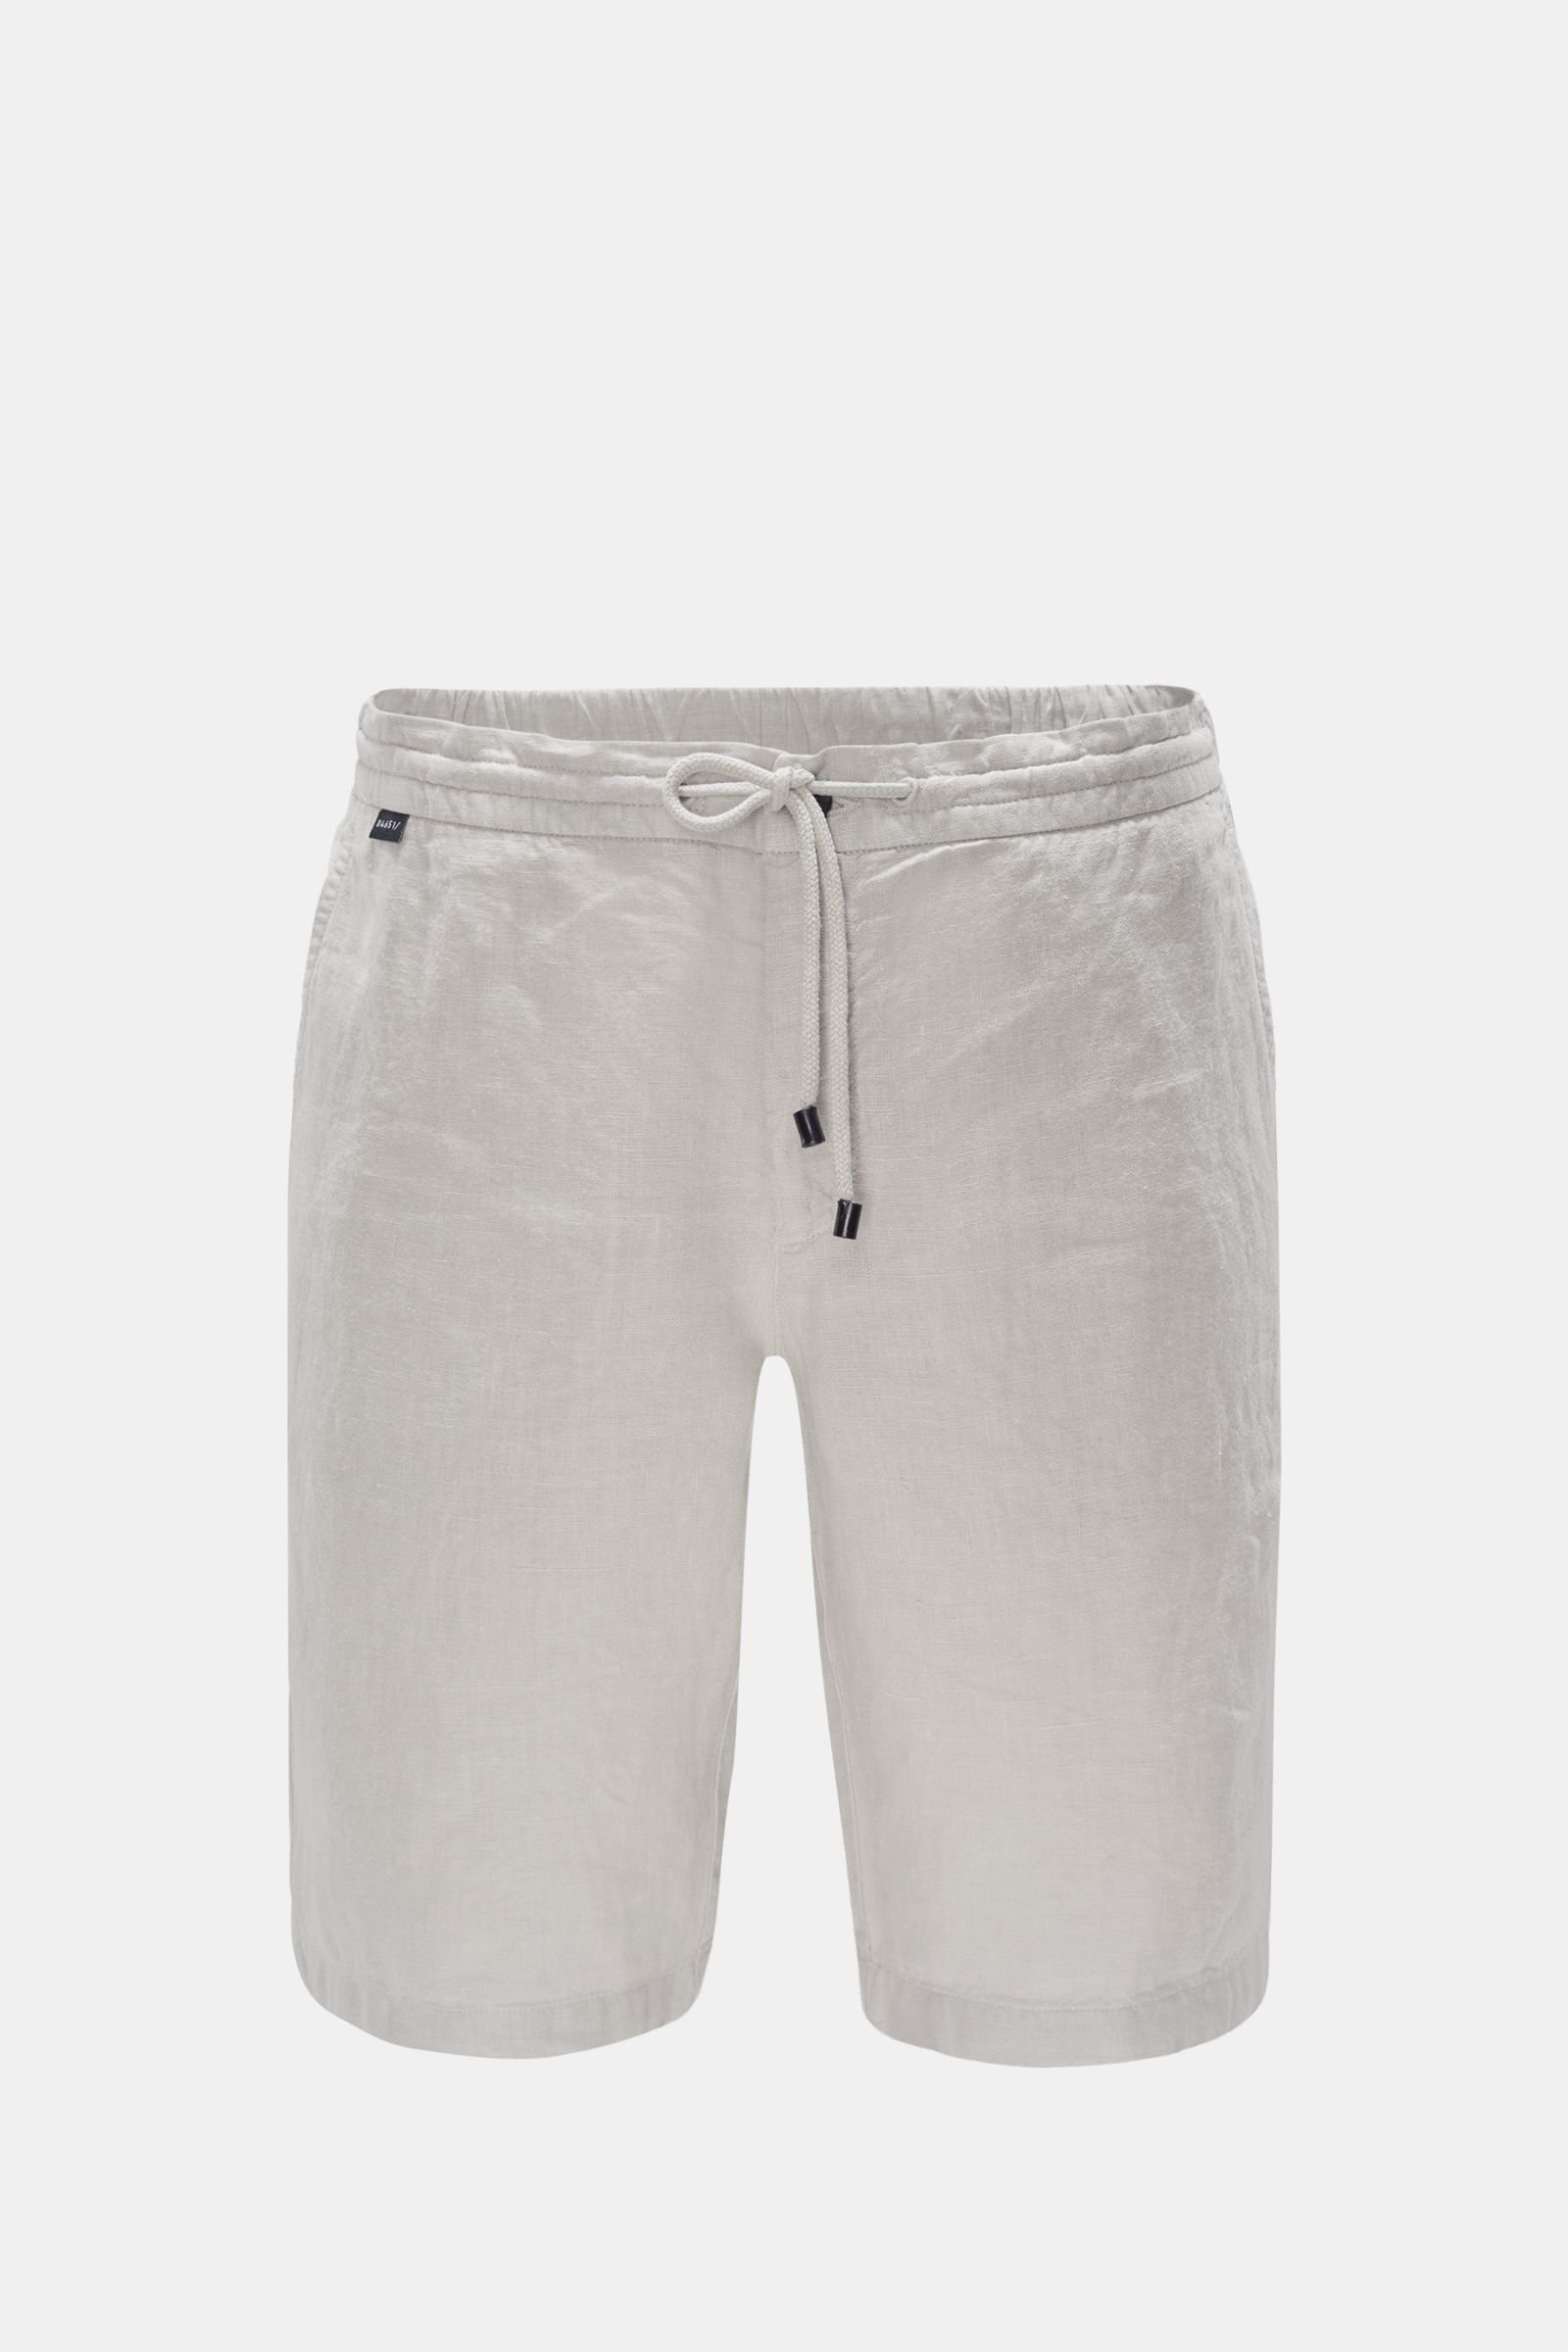 Linen Bermuda shorts light grey